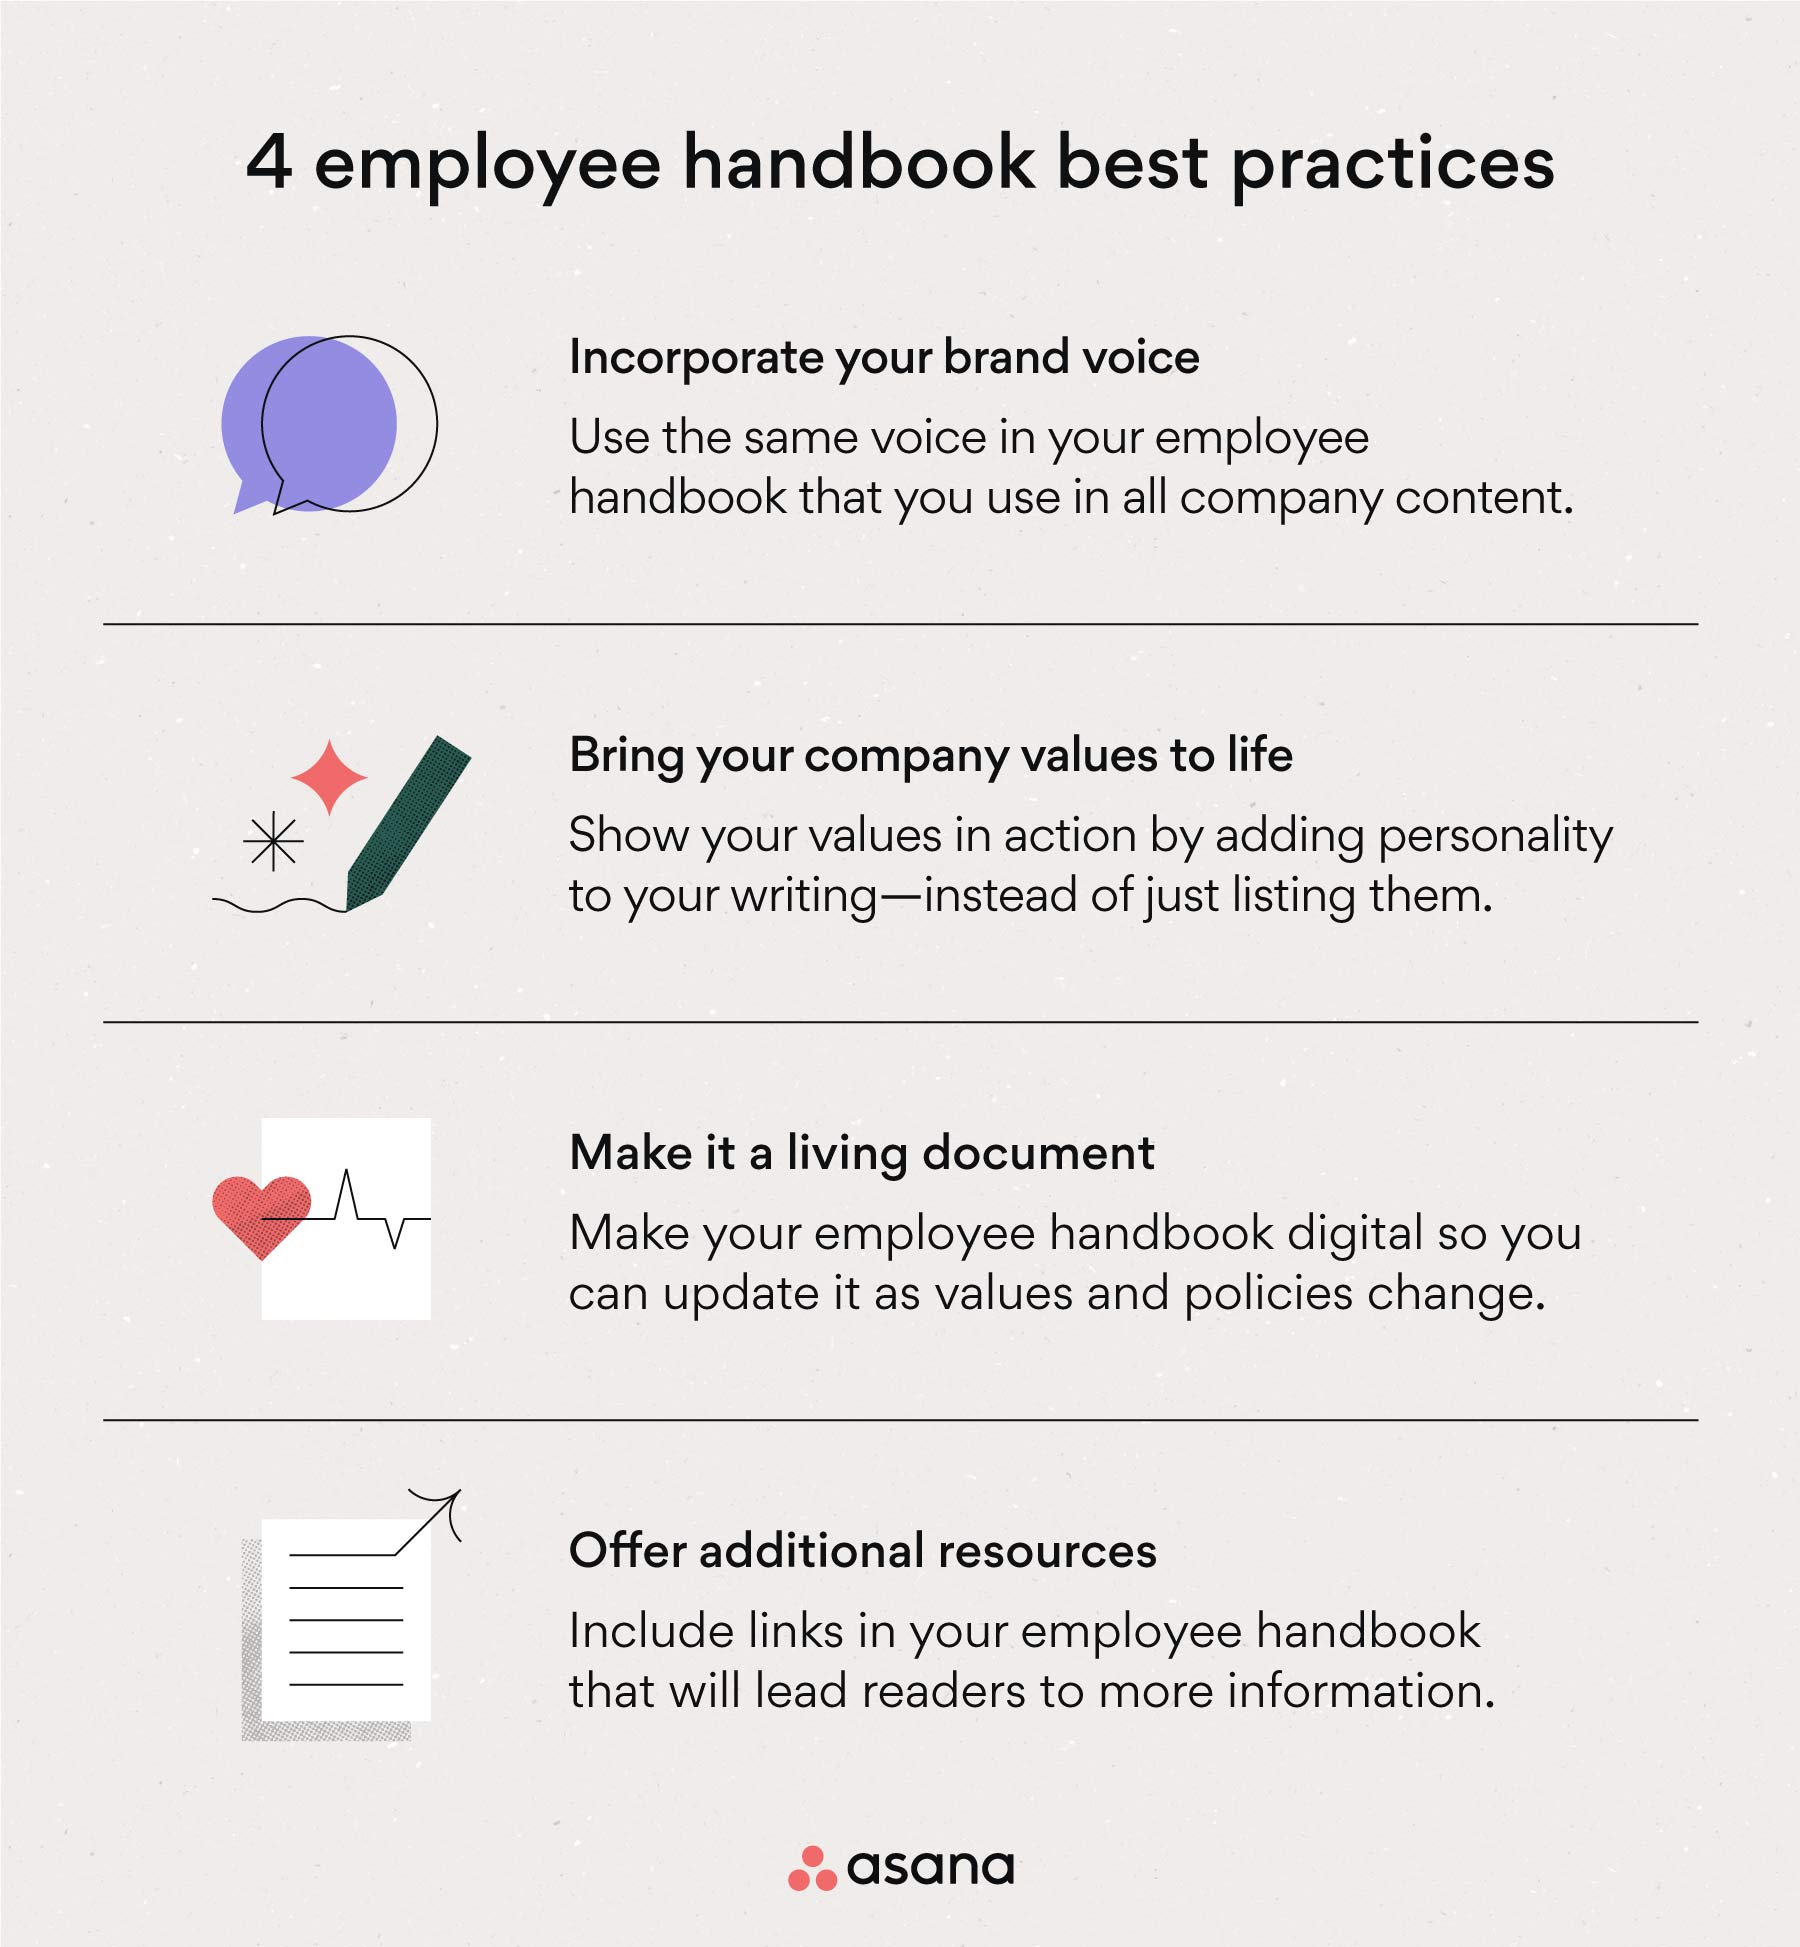 4 employee handbook best practices